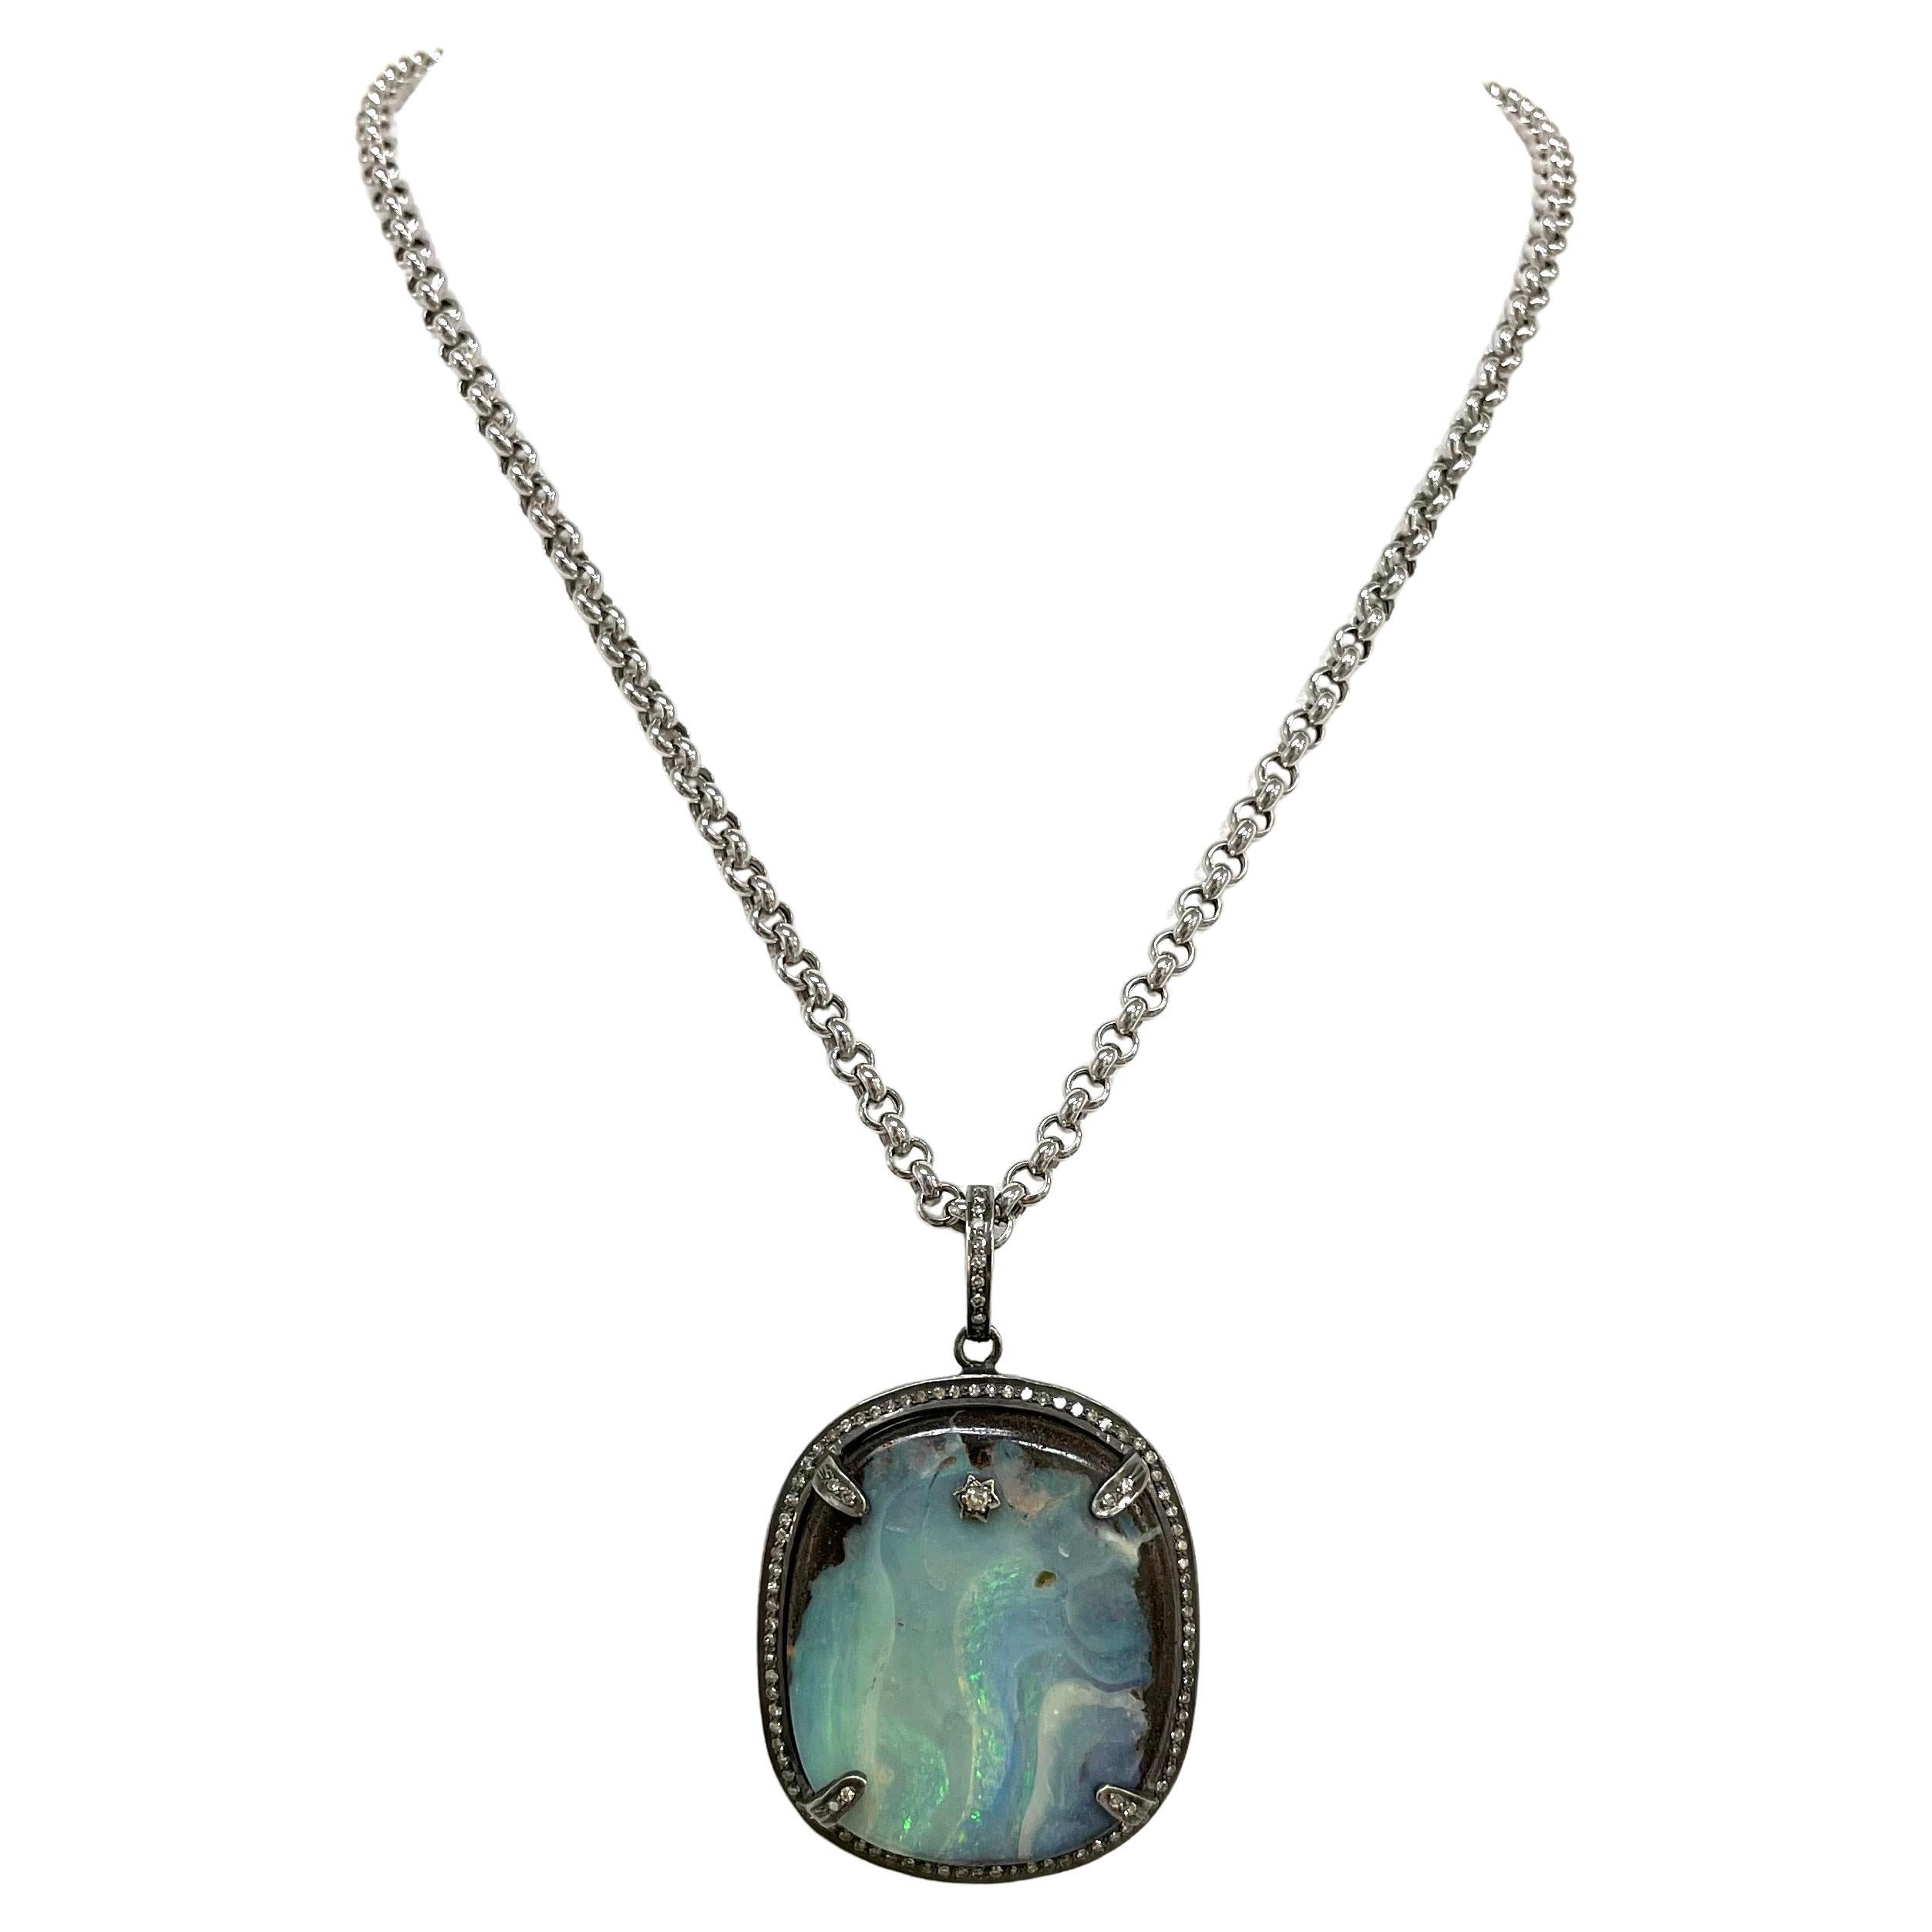 Australian Boulder Opal and Diamonds Pendant Necklace